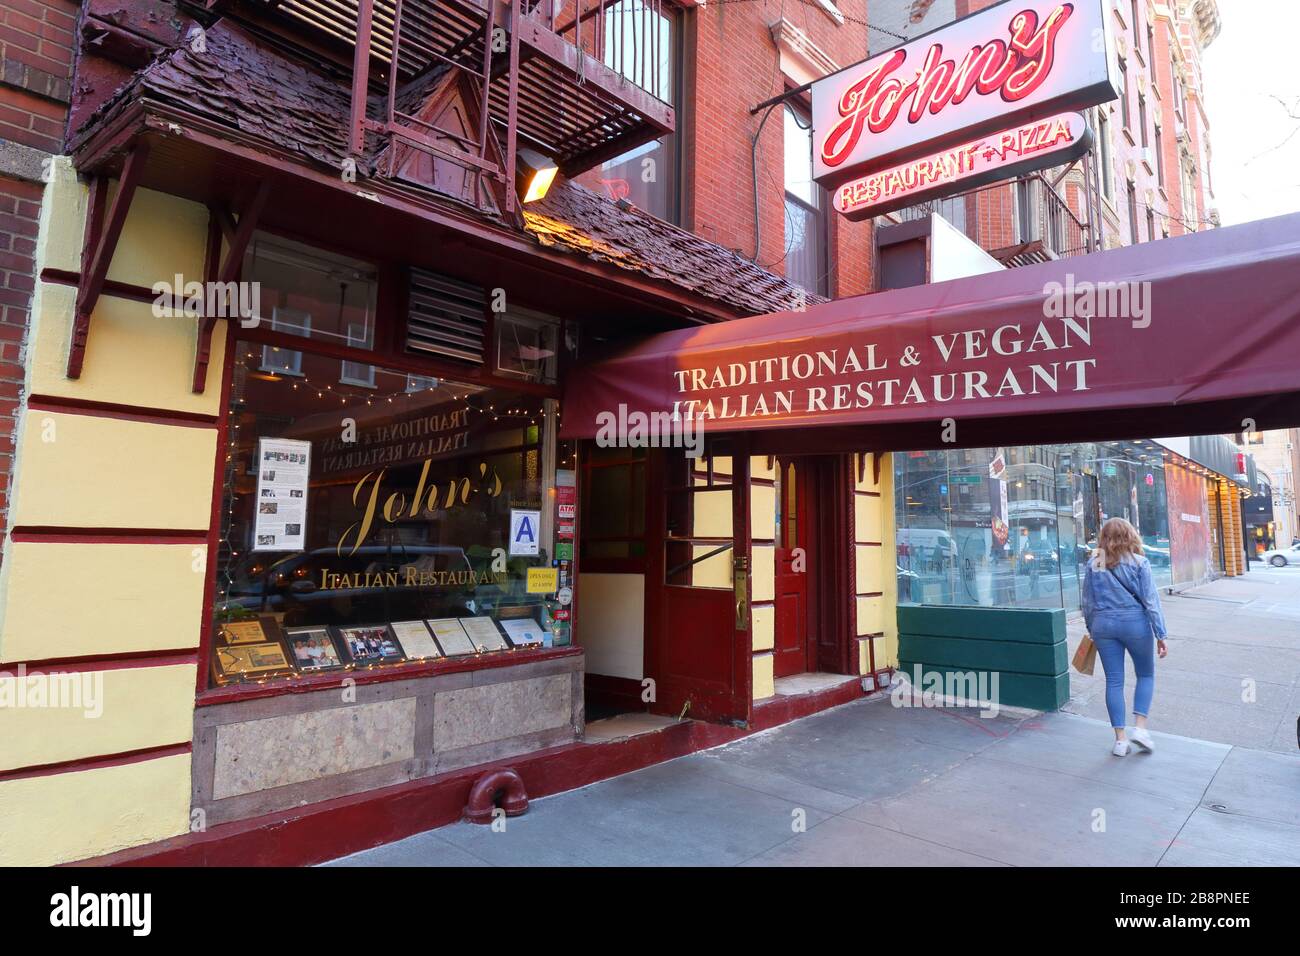 John's, 12ème rue, 302 E 12ème rue, New York, NY. Face extérieure d'un restaurant italien dans le quartier East Village de Manhattan. Banque D'Images